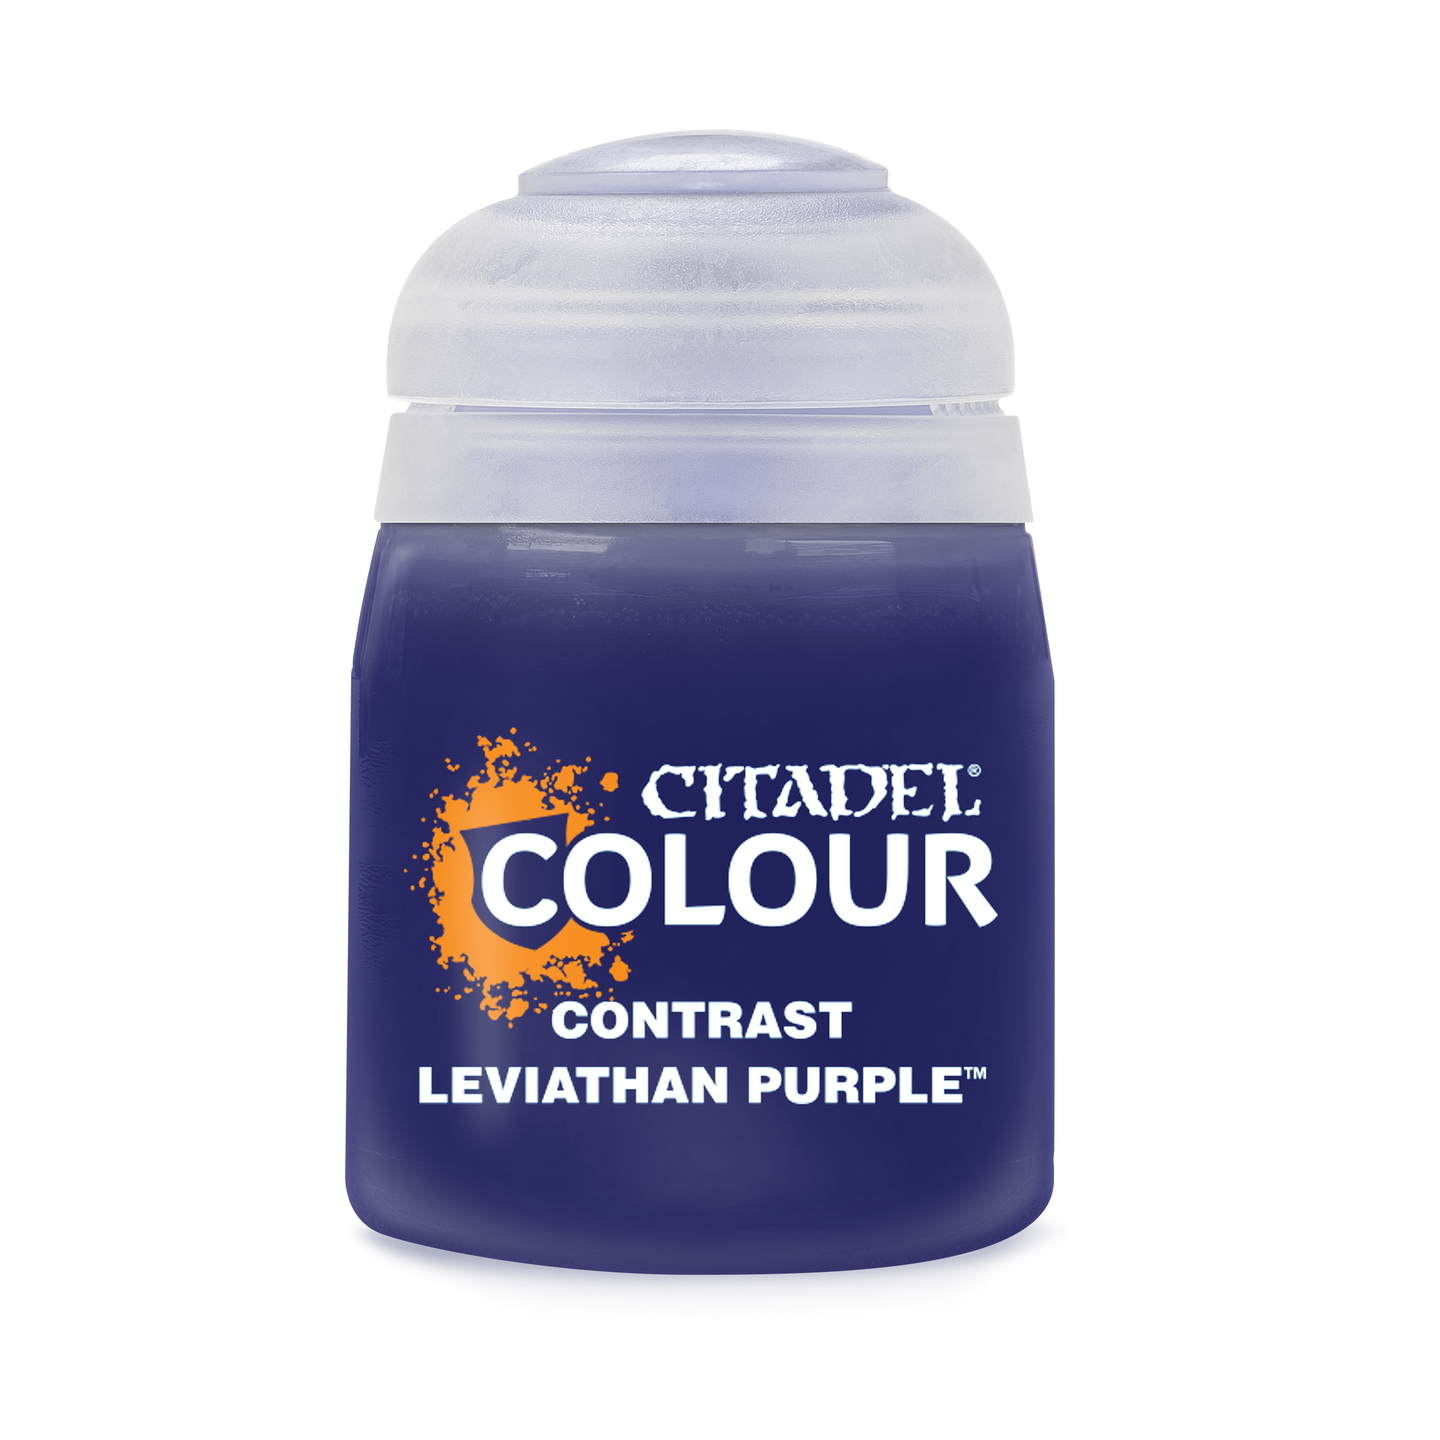 CONTRAST: Leviathon Purple